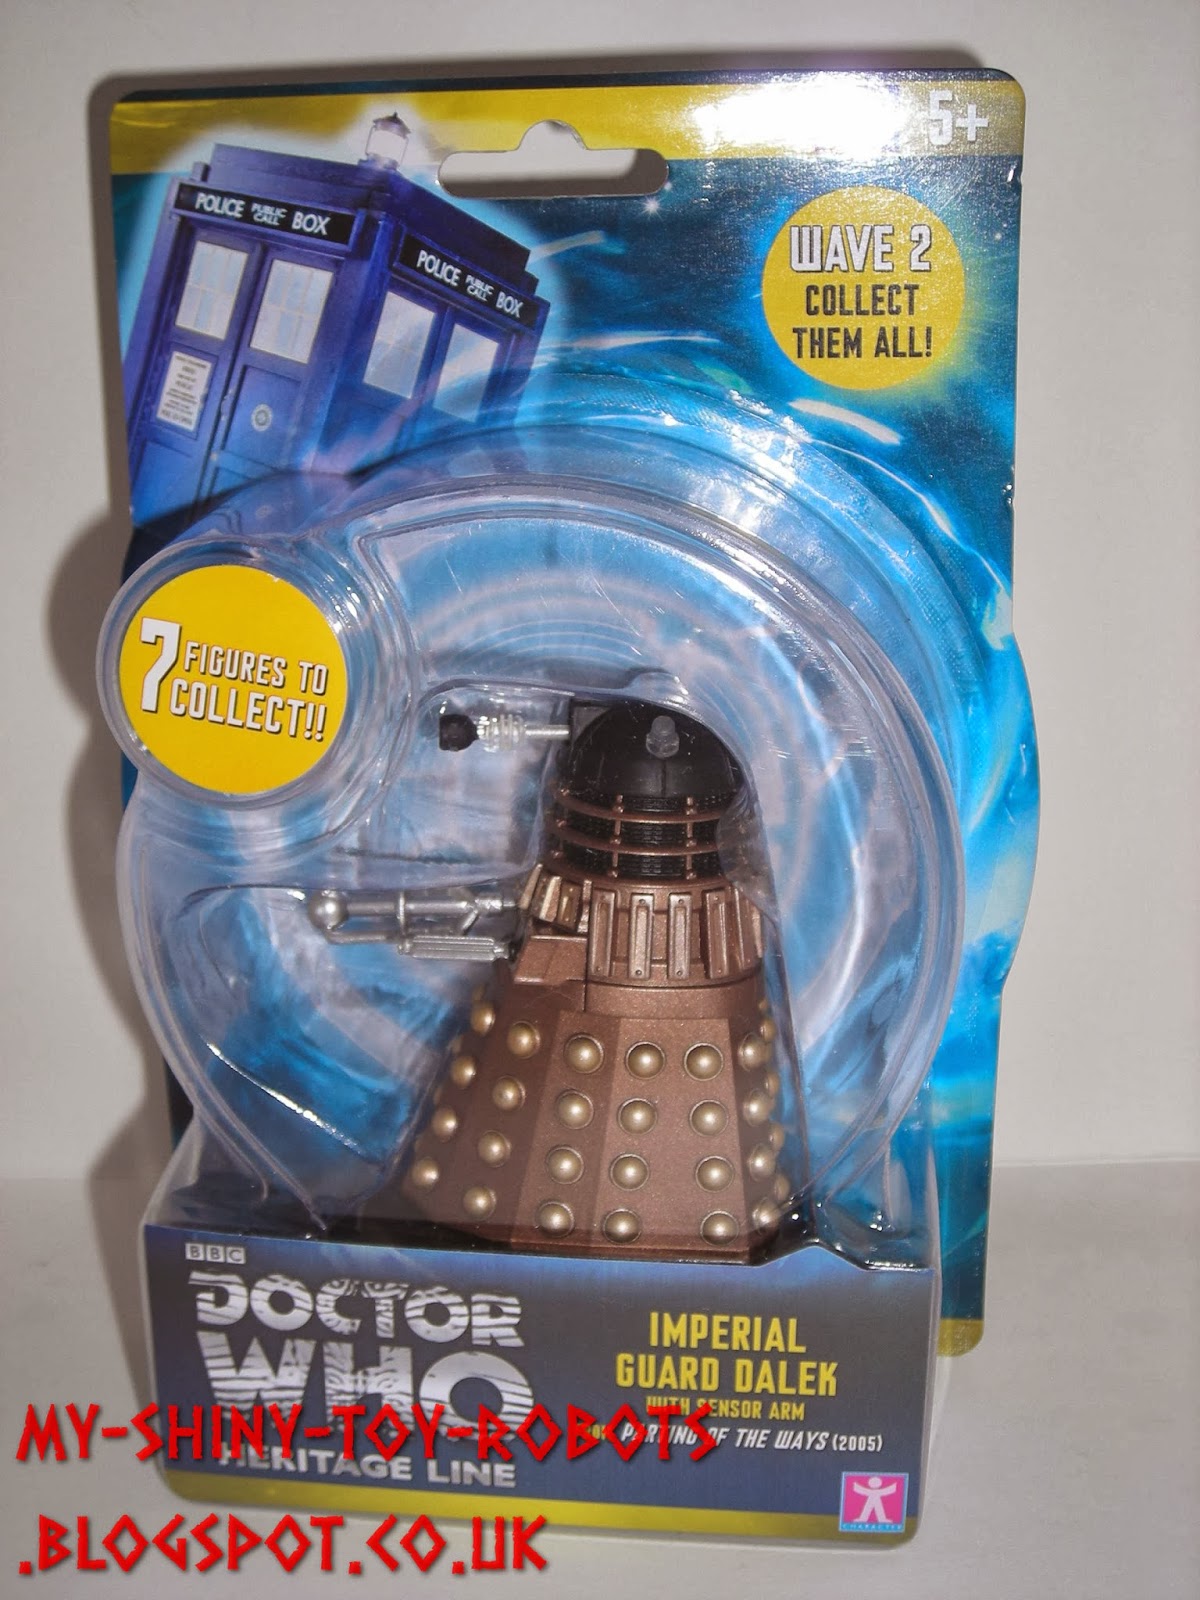 Imperial Guard Dalek in packaging